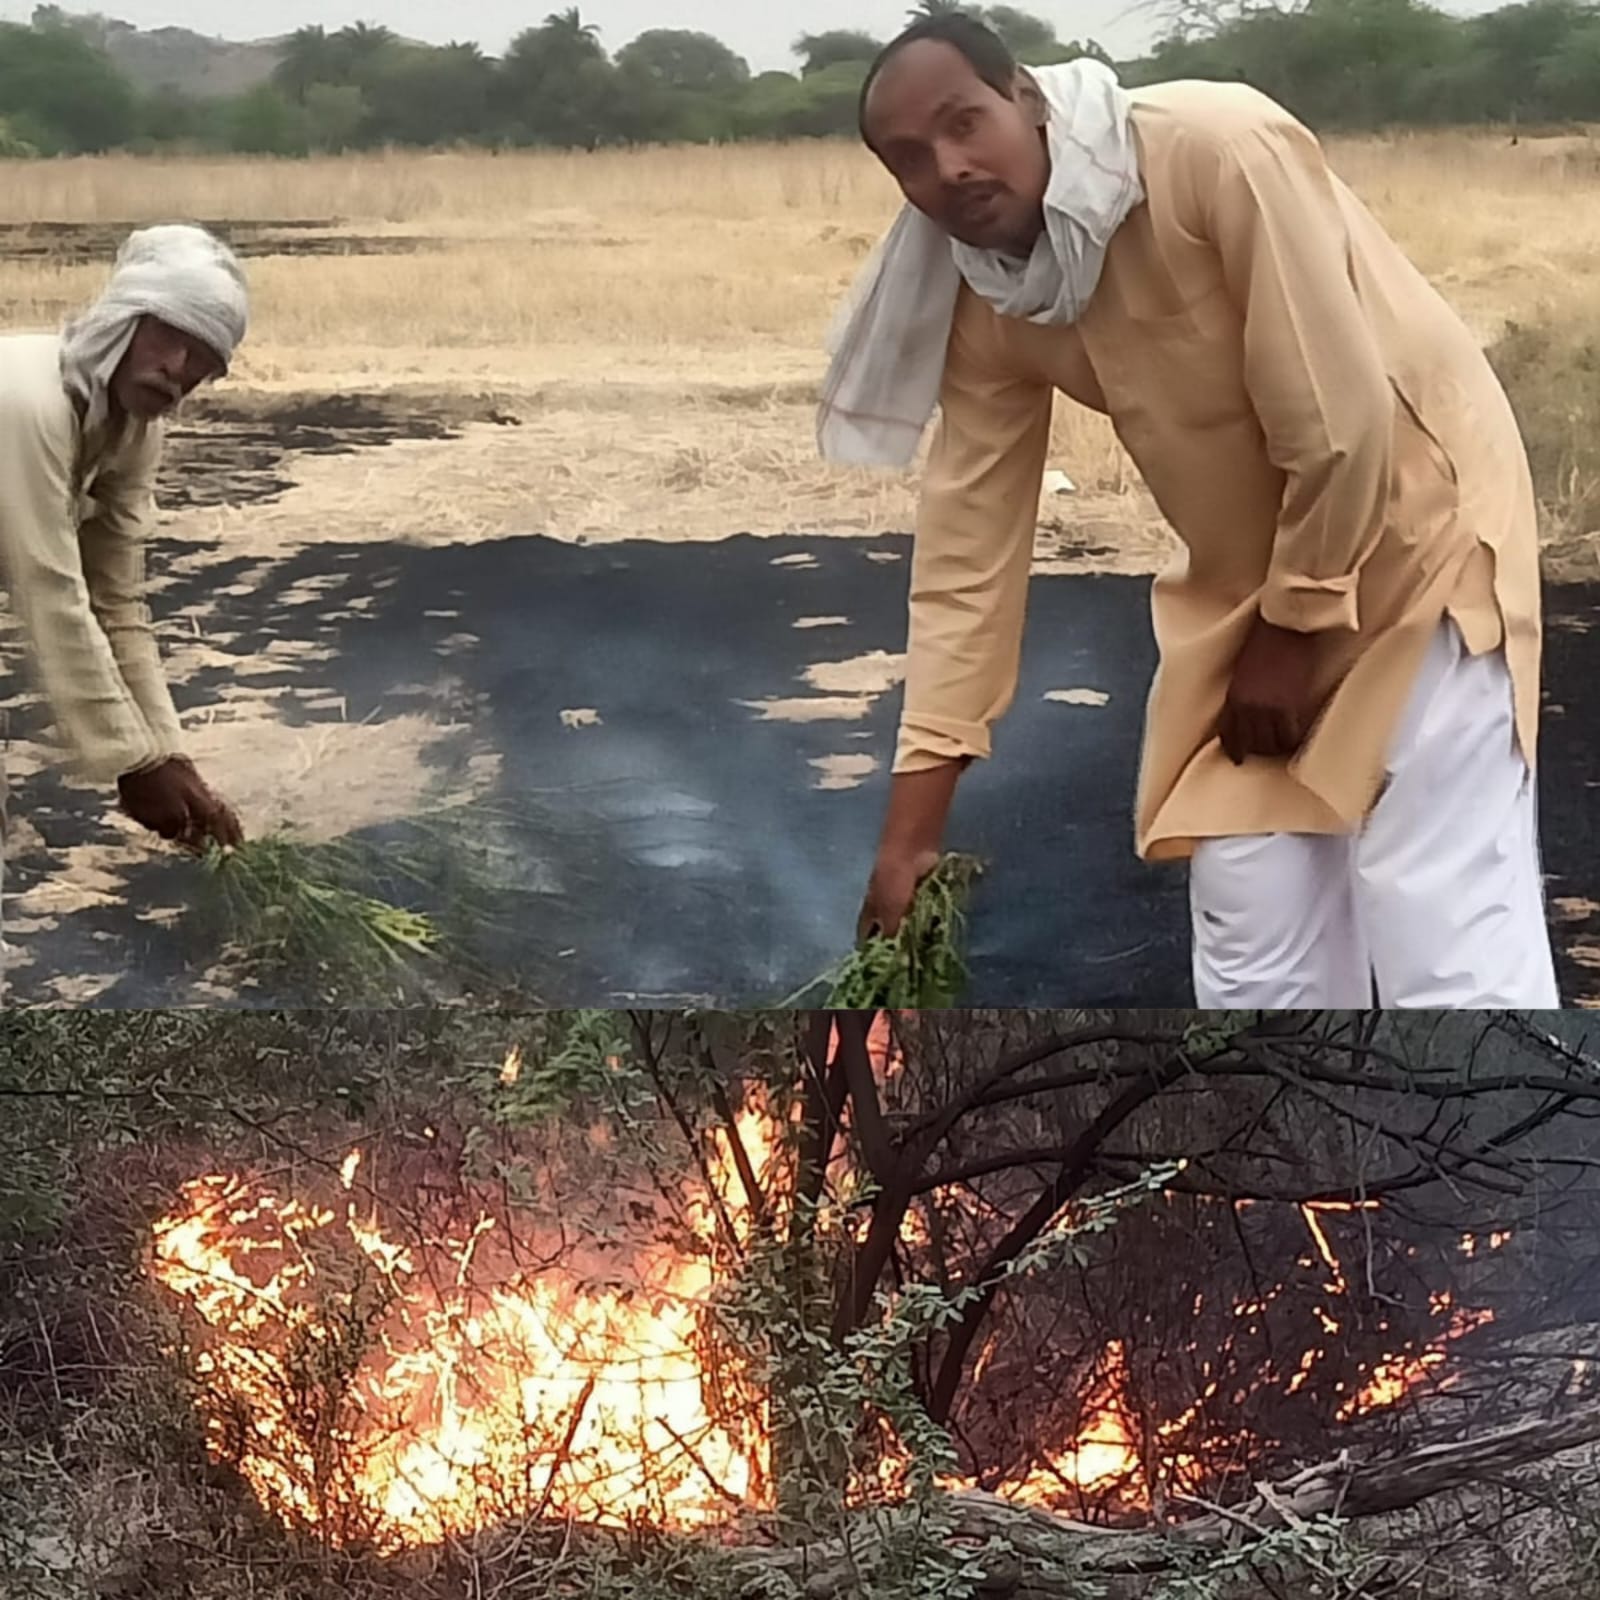 खेतों में आग लगने से कीमती सीशम,सागौन के पेड़ जले,किसानों का प्रयास आग बुझाने में रहा कामयाब